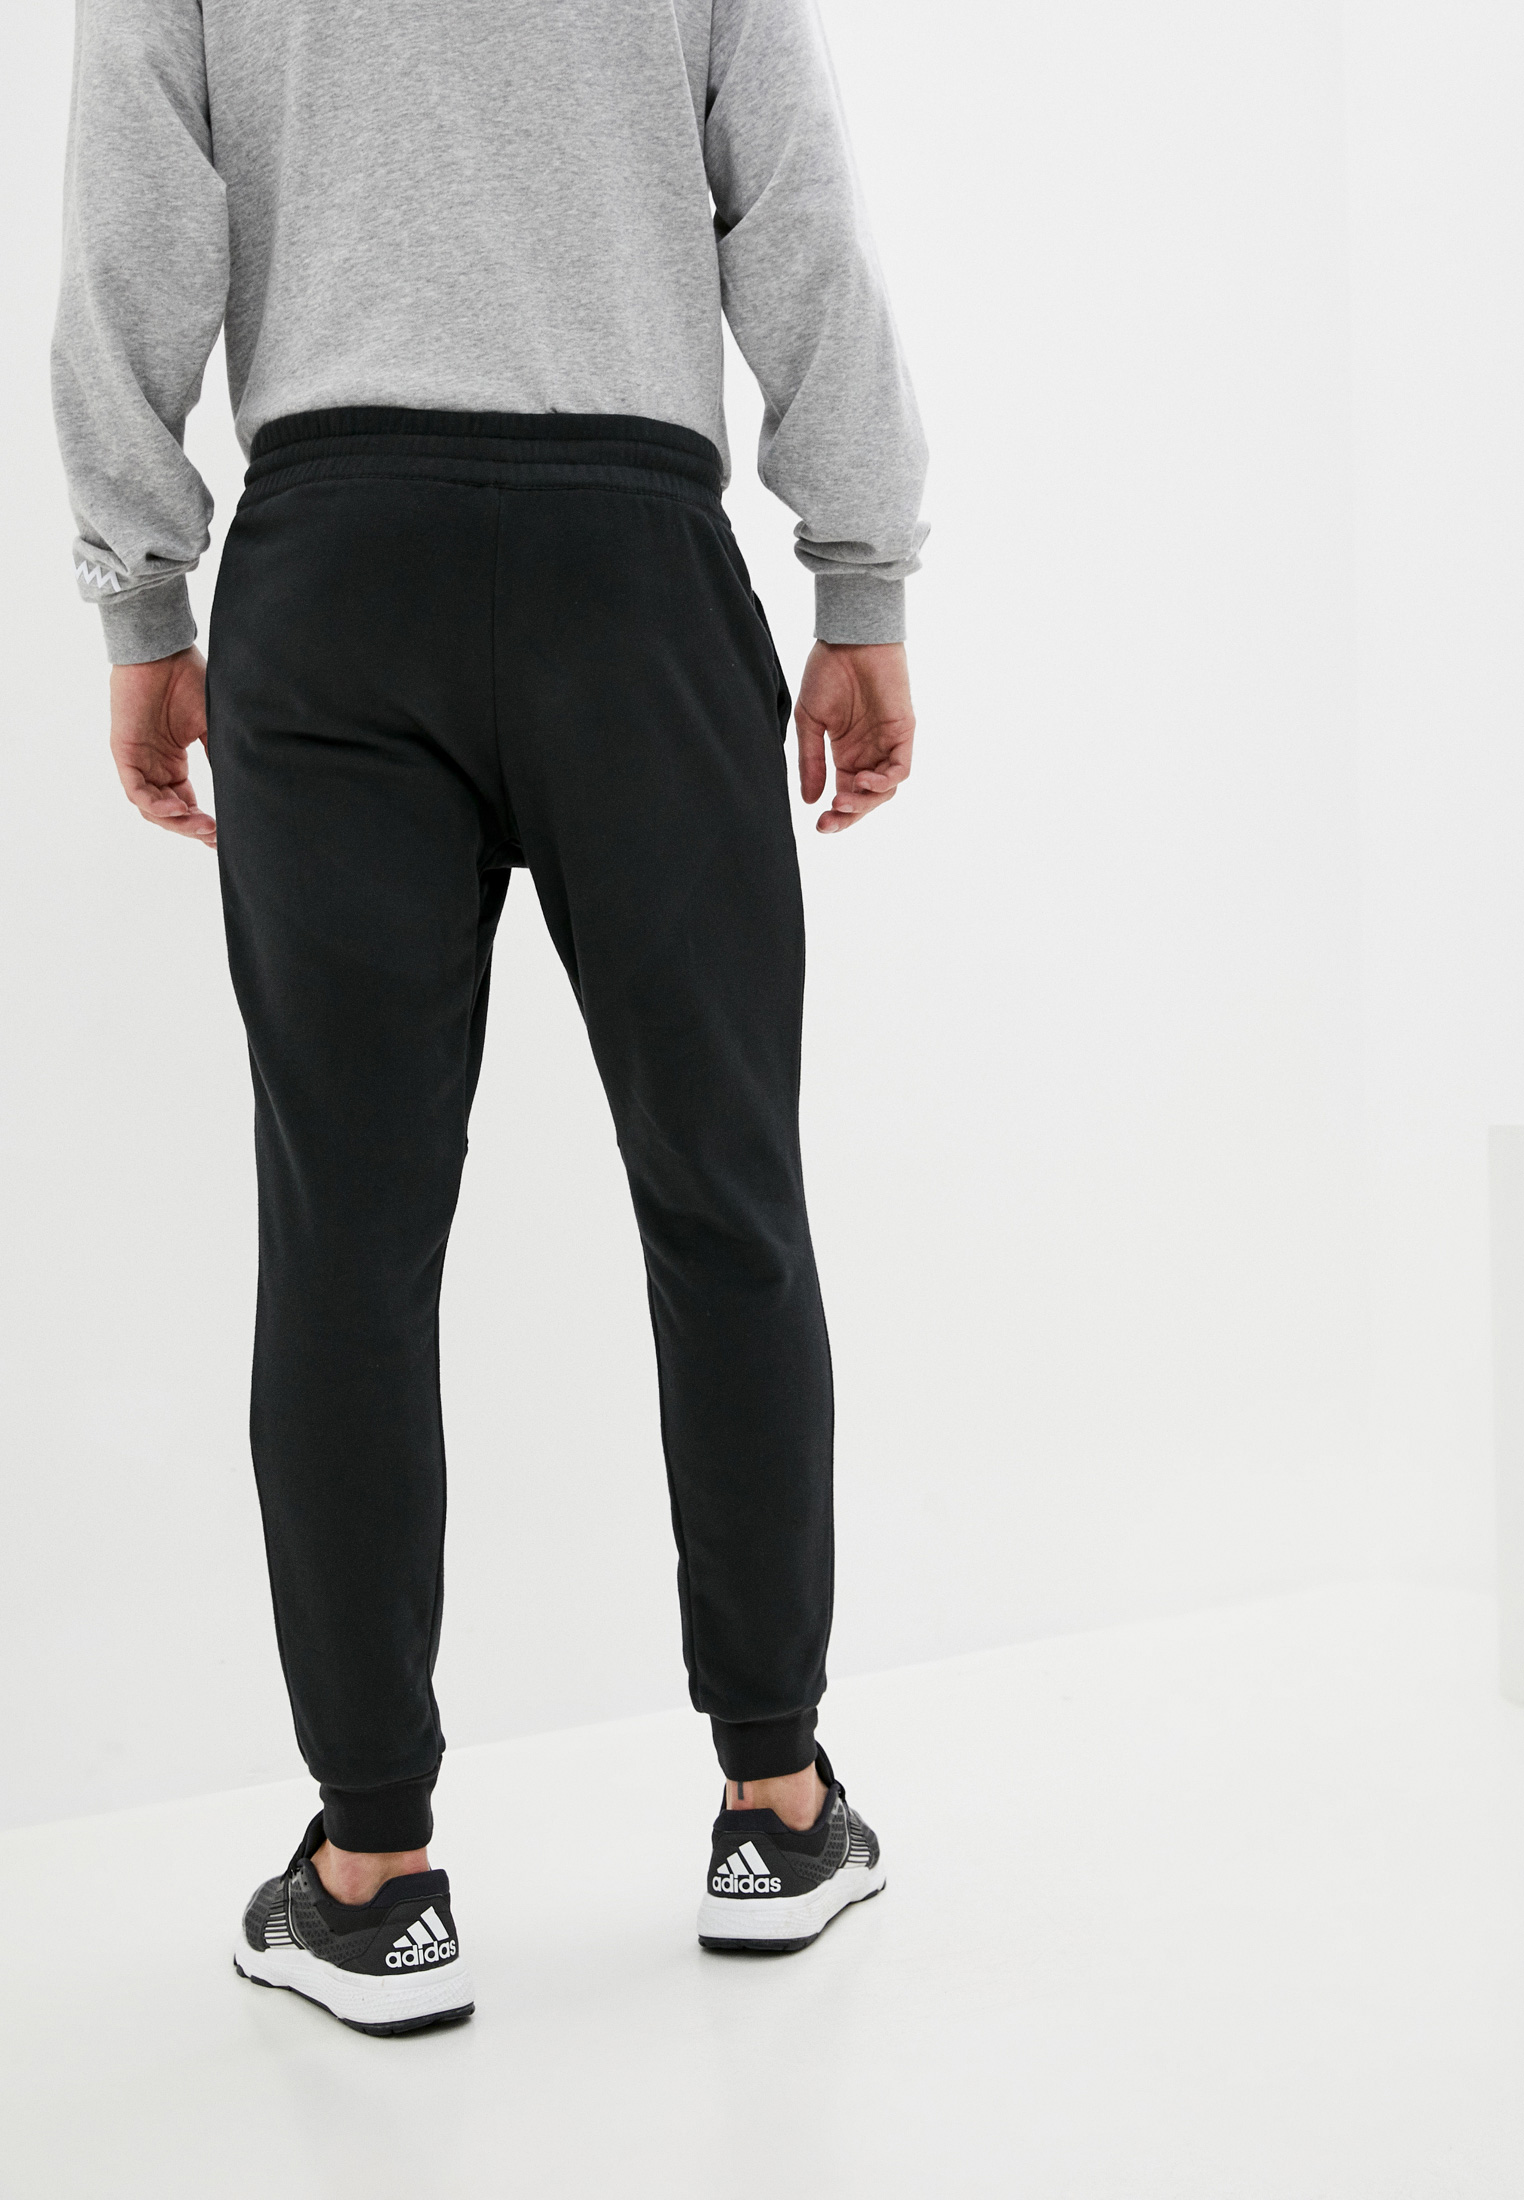 Мужские брюки Adidas (Адидас) GD3868 купить